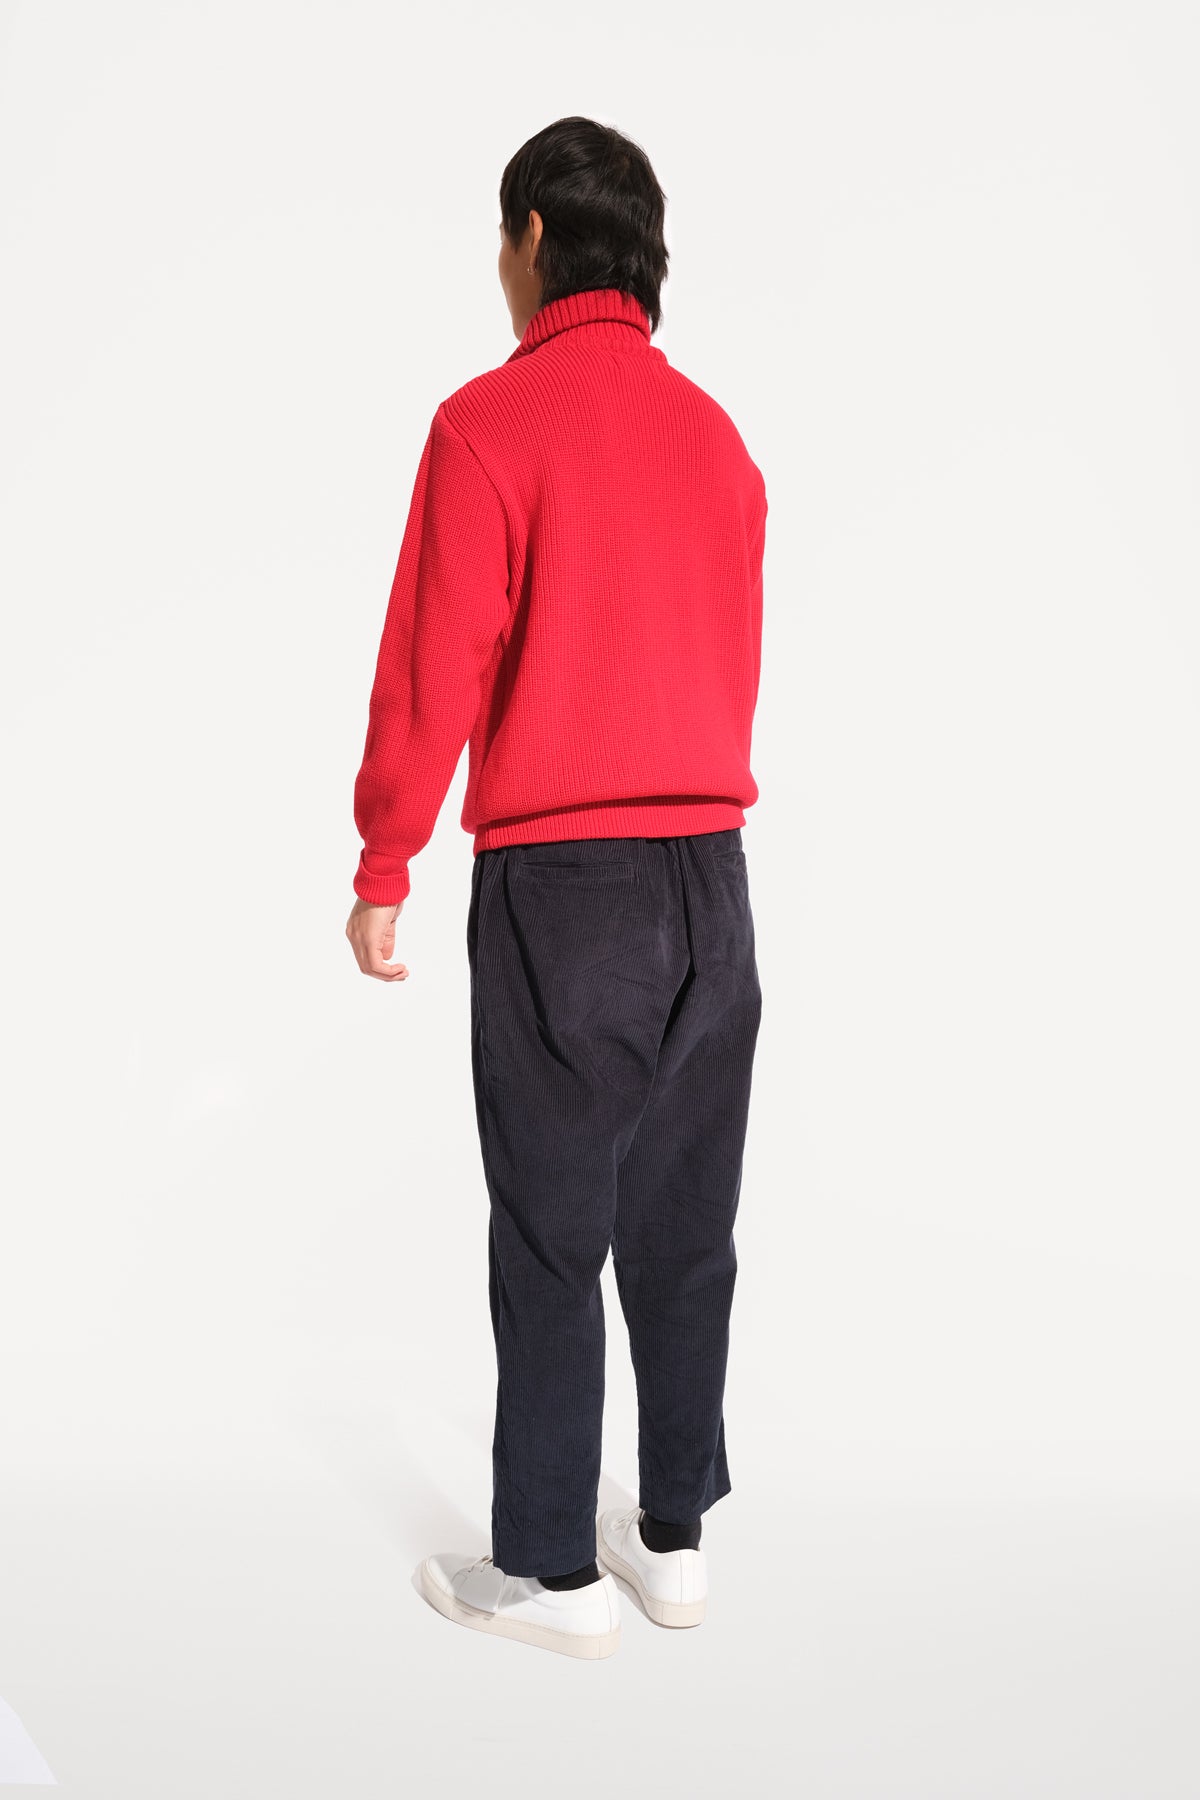 oftt - 04 - half-zip heavy knit  jumper - red - merino wool - image  5